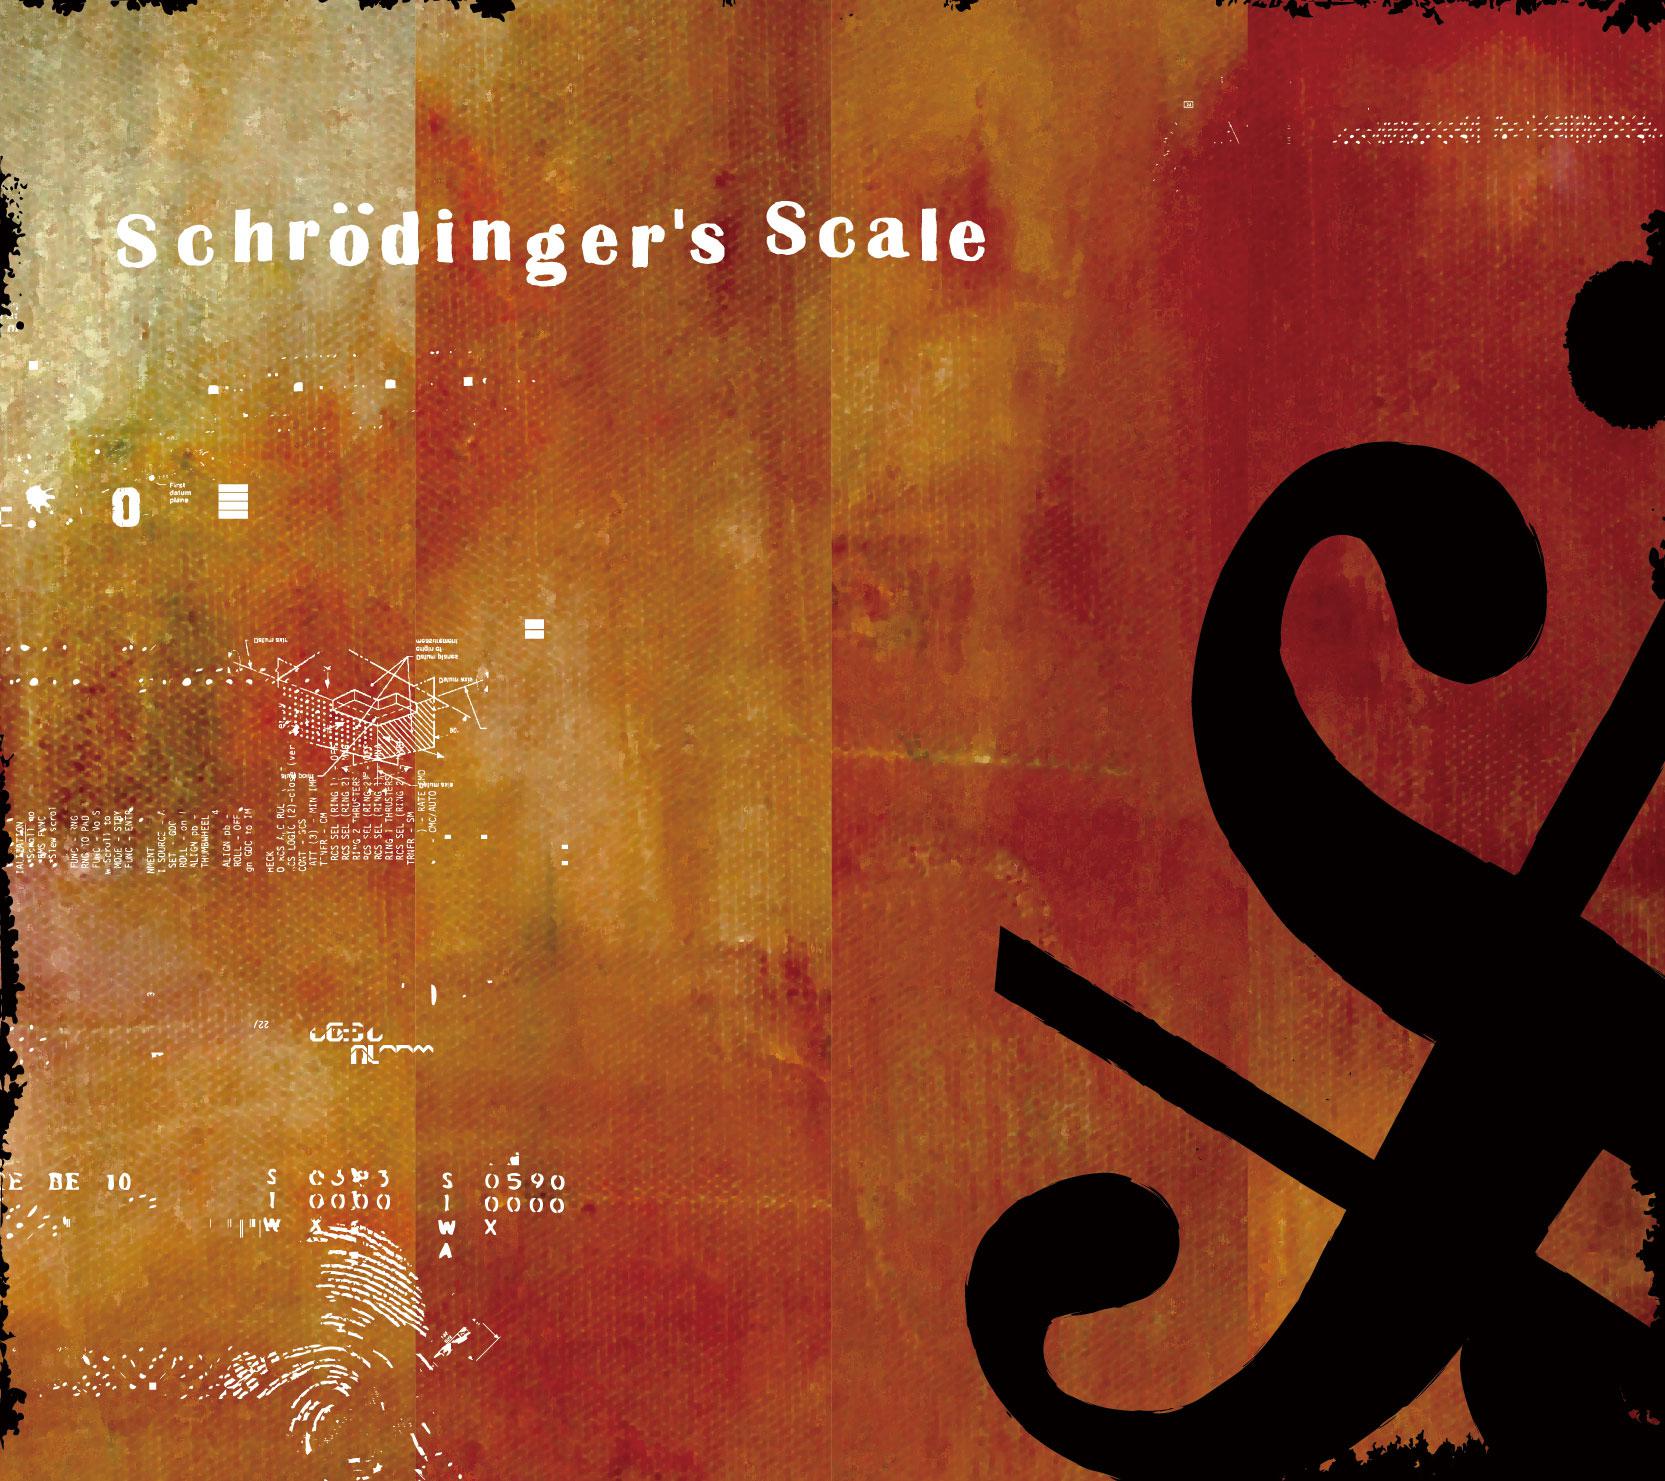 ★STAR GUiTAR - Nothing Gonna Change My World feat. Schroeder-Headz -Schrodinger’s Edit-